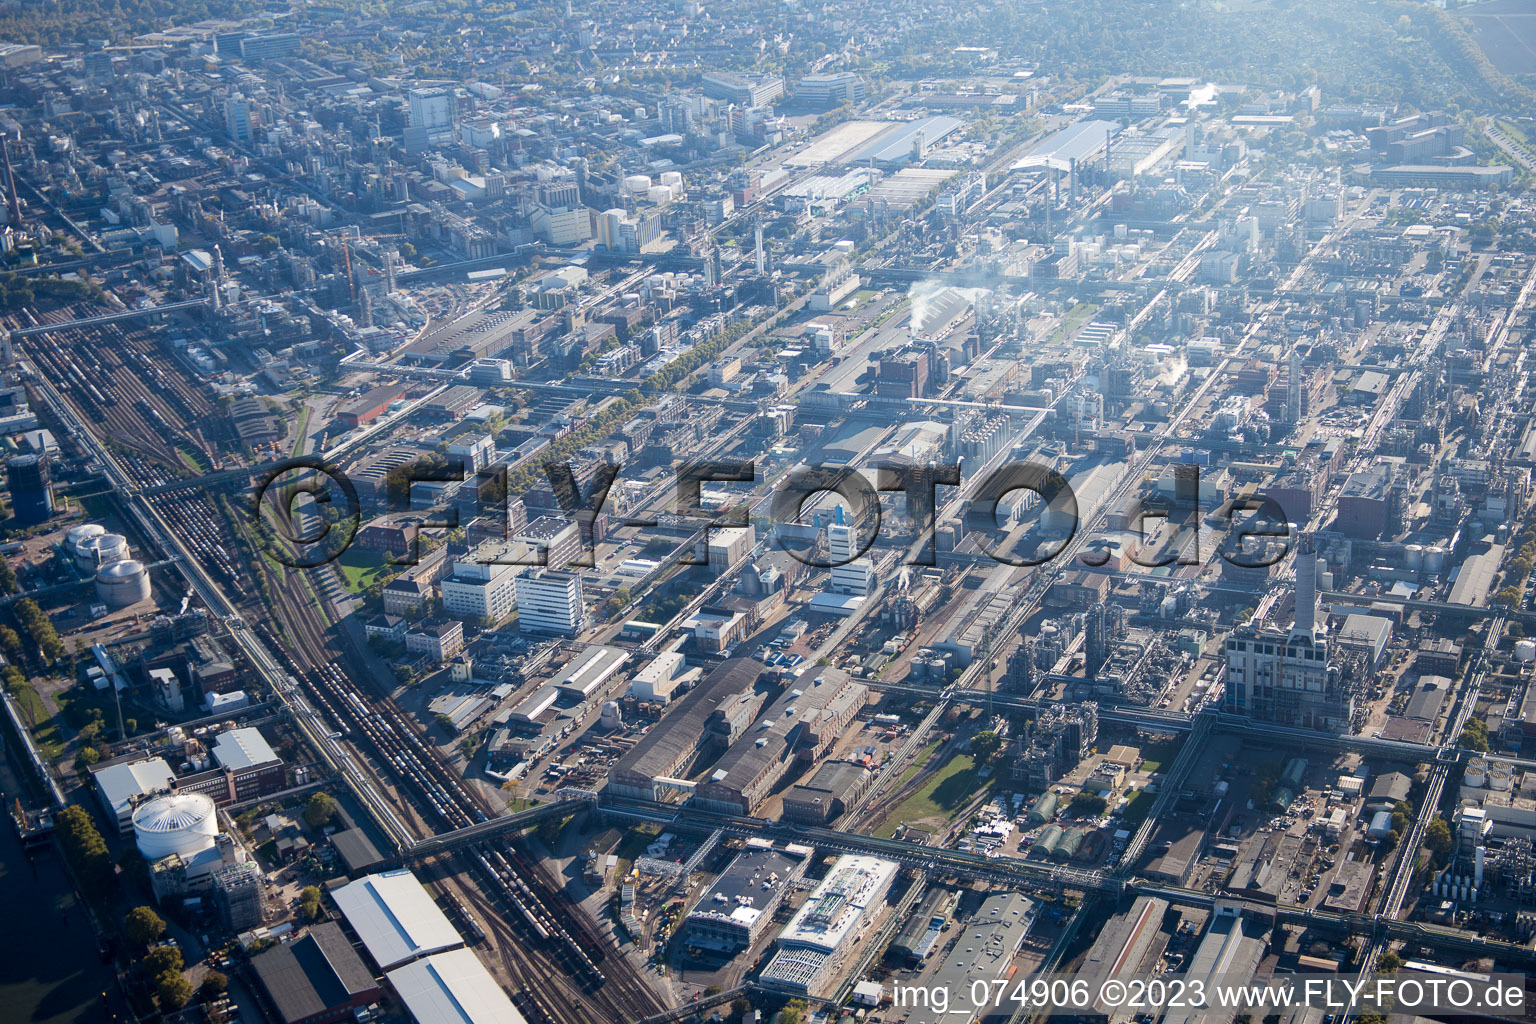 Luftbild von Ortsteil BASF in Ludwigshafen am Rhein im Bundesland Rheinland-Pfalz, Deutschland